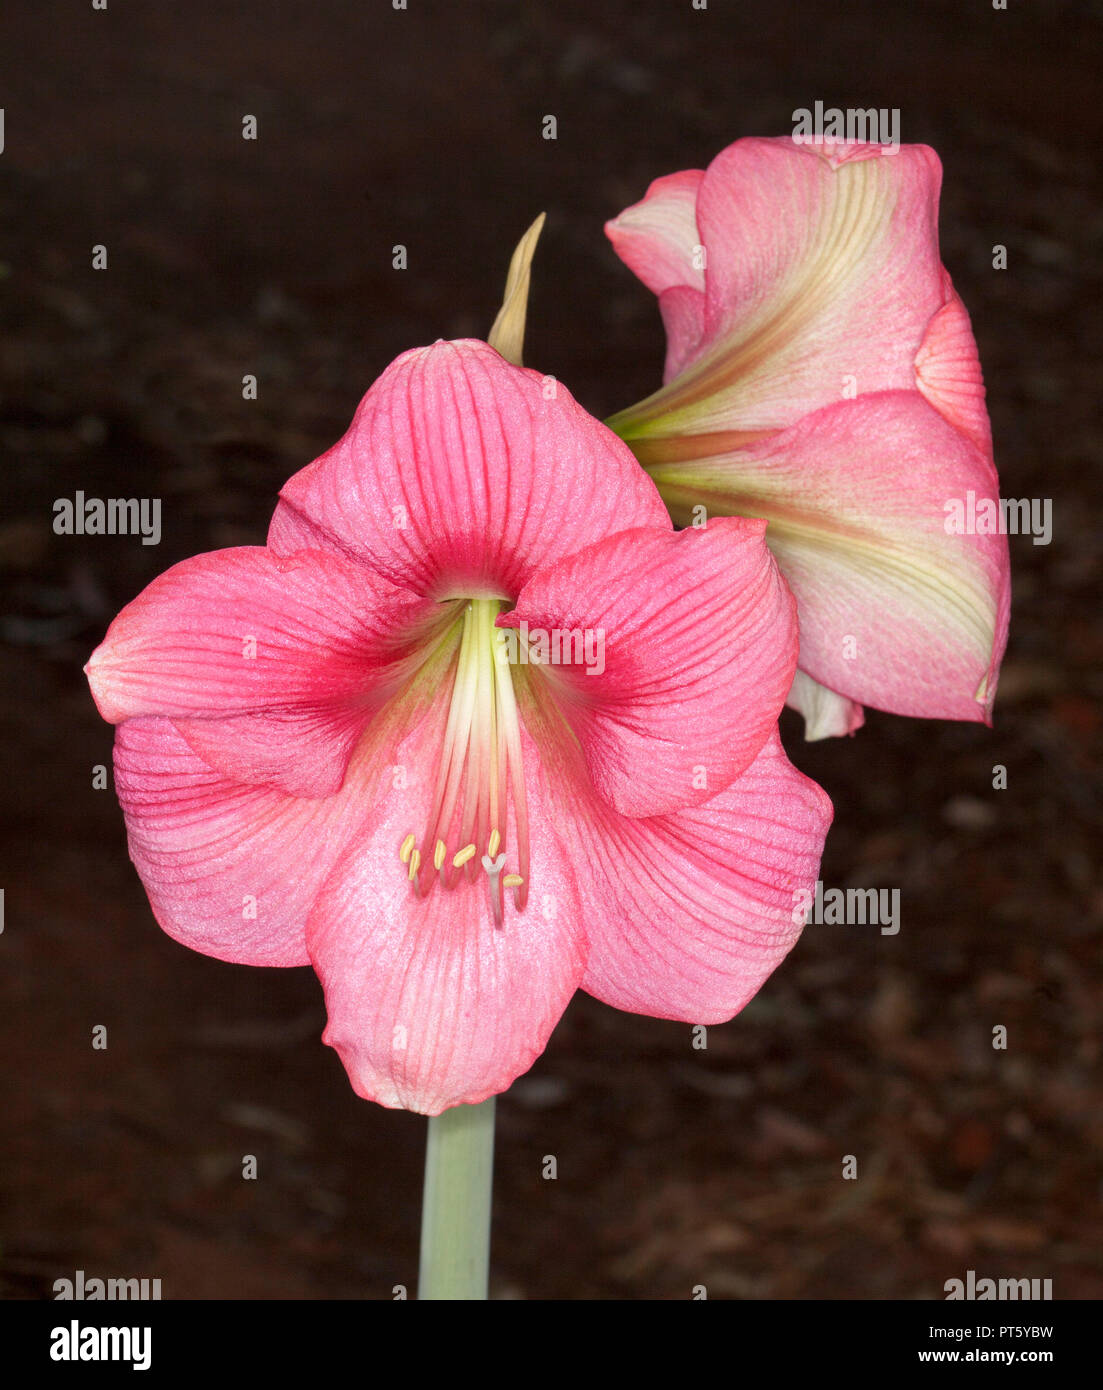 Grappe de grandes fleurs rose profond et spectaculaire de l'Hippeastrum, ampoule de floraison du printemps, sur un fond sombre Banque D'Images